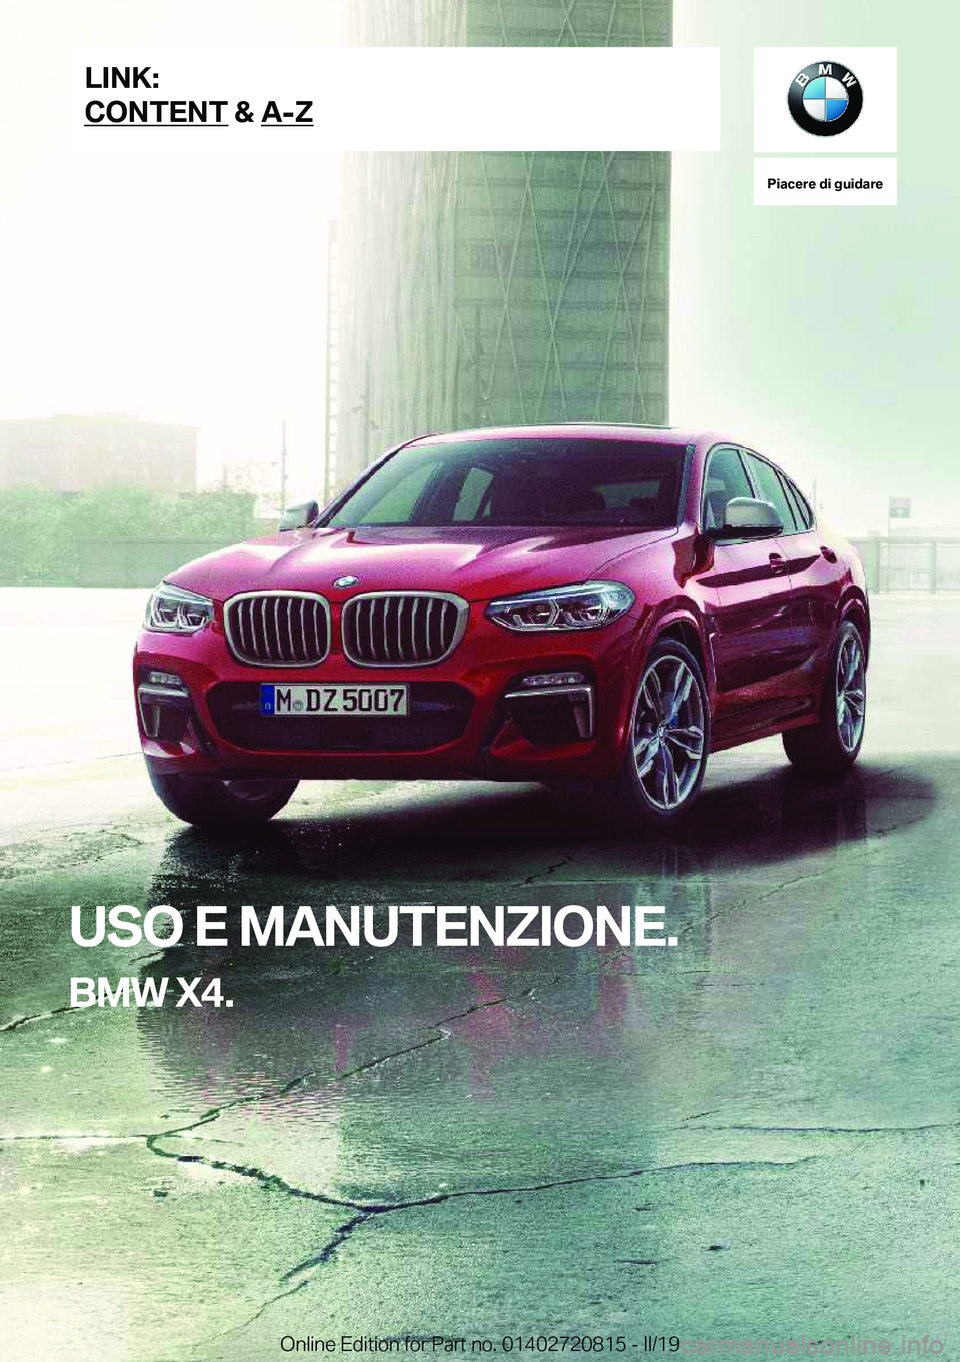 BMW X4 2019  Libretti Di Uso E manutenzione (in Italian) �P�i�a�c�e�r�e��d�i��g�u�i�d�a�r�e
�U�S�O��E��M�A�N�U�T�E�N�Z�I�O�N�E�.
�B�M�W��X�4�.�L�I�N�K�:
�C�O�N�T�E�N�T��&��A�-�Z�O�n�l�i�n�e��E�d�i�t�i�o�n��f�o�r��P�a�r�t��n�o�.��0�1�4�0�2�7�2�0�